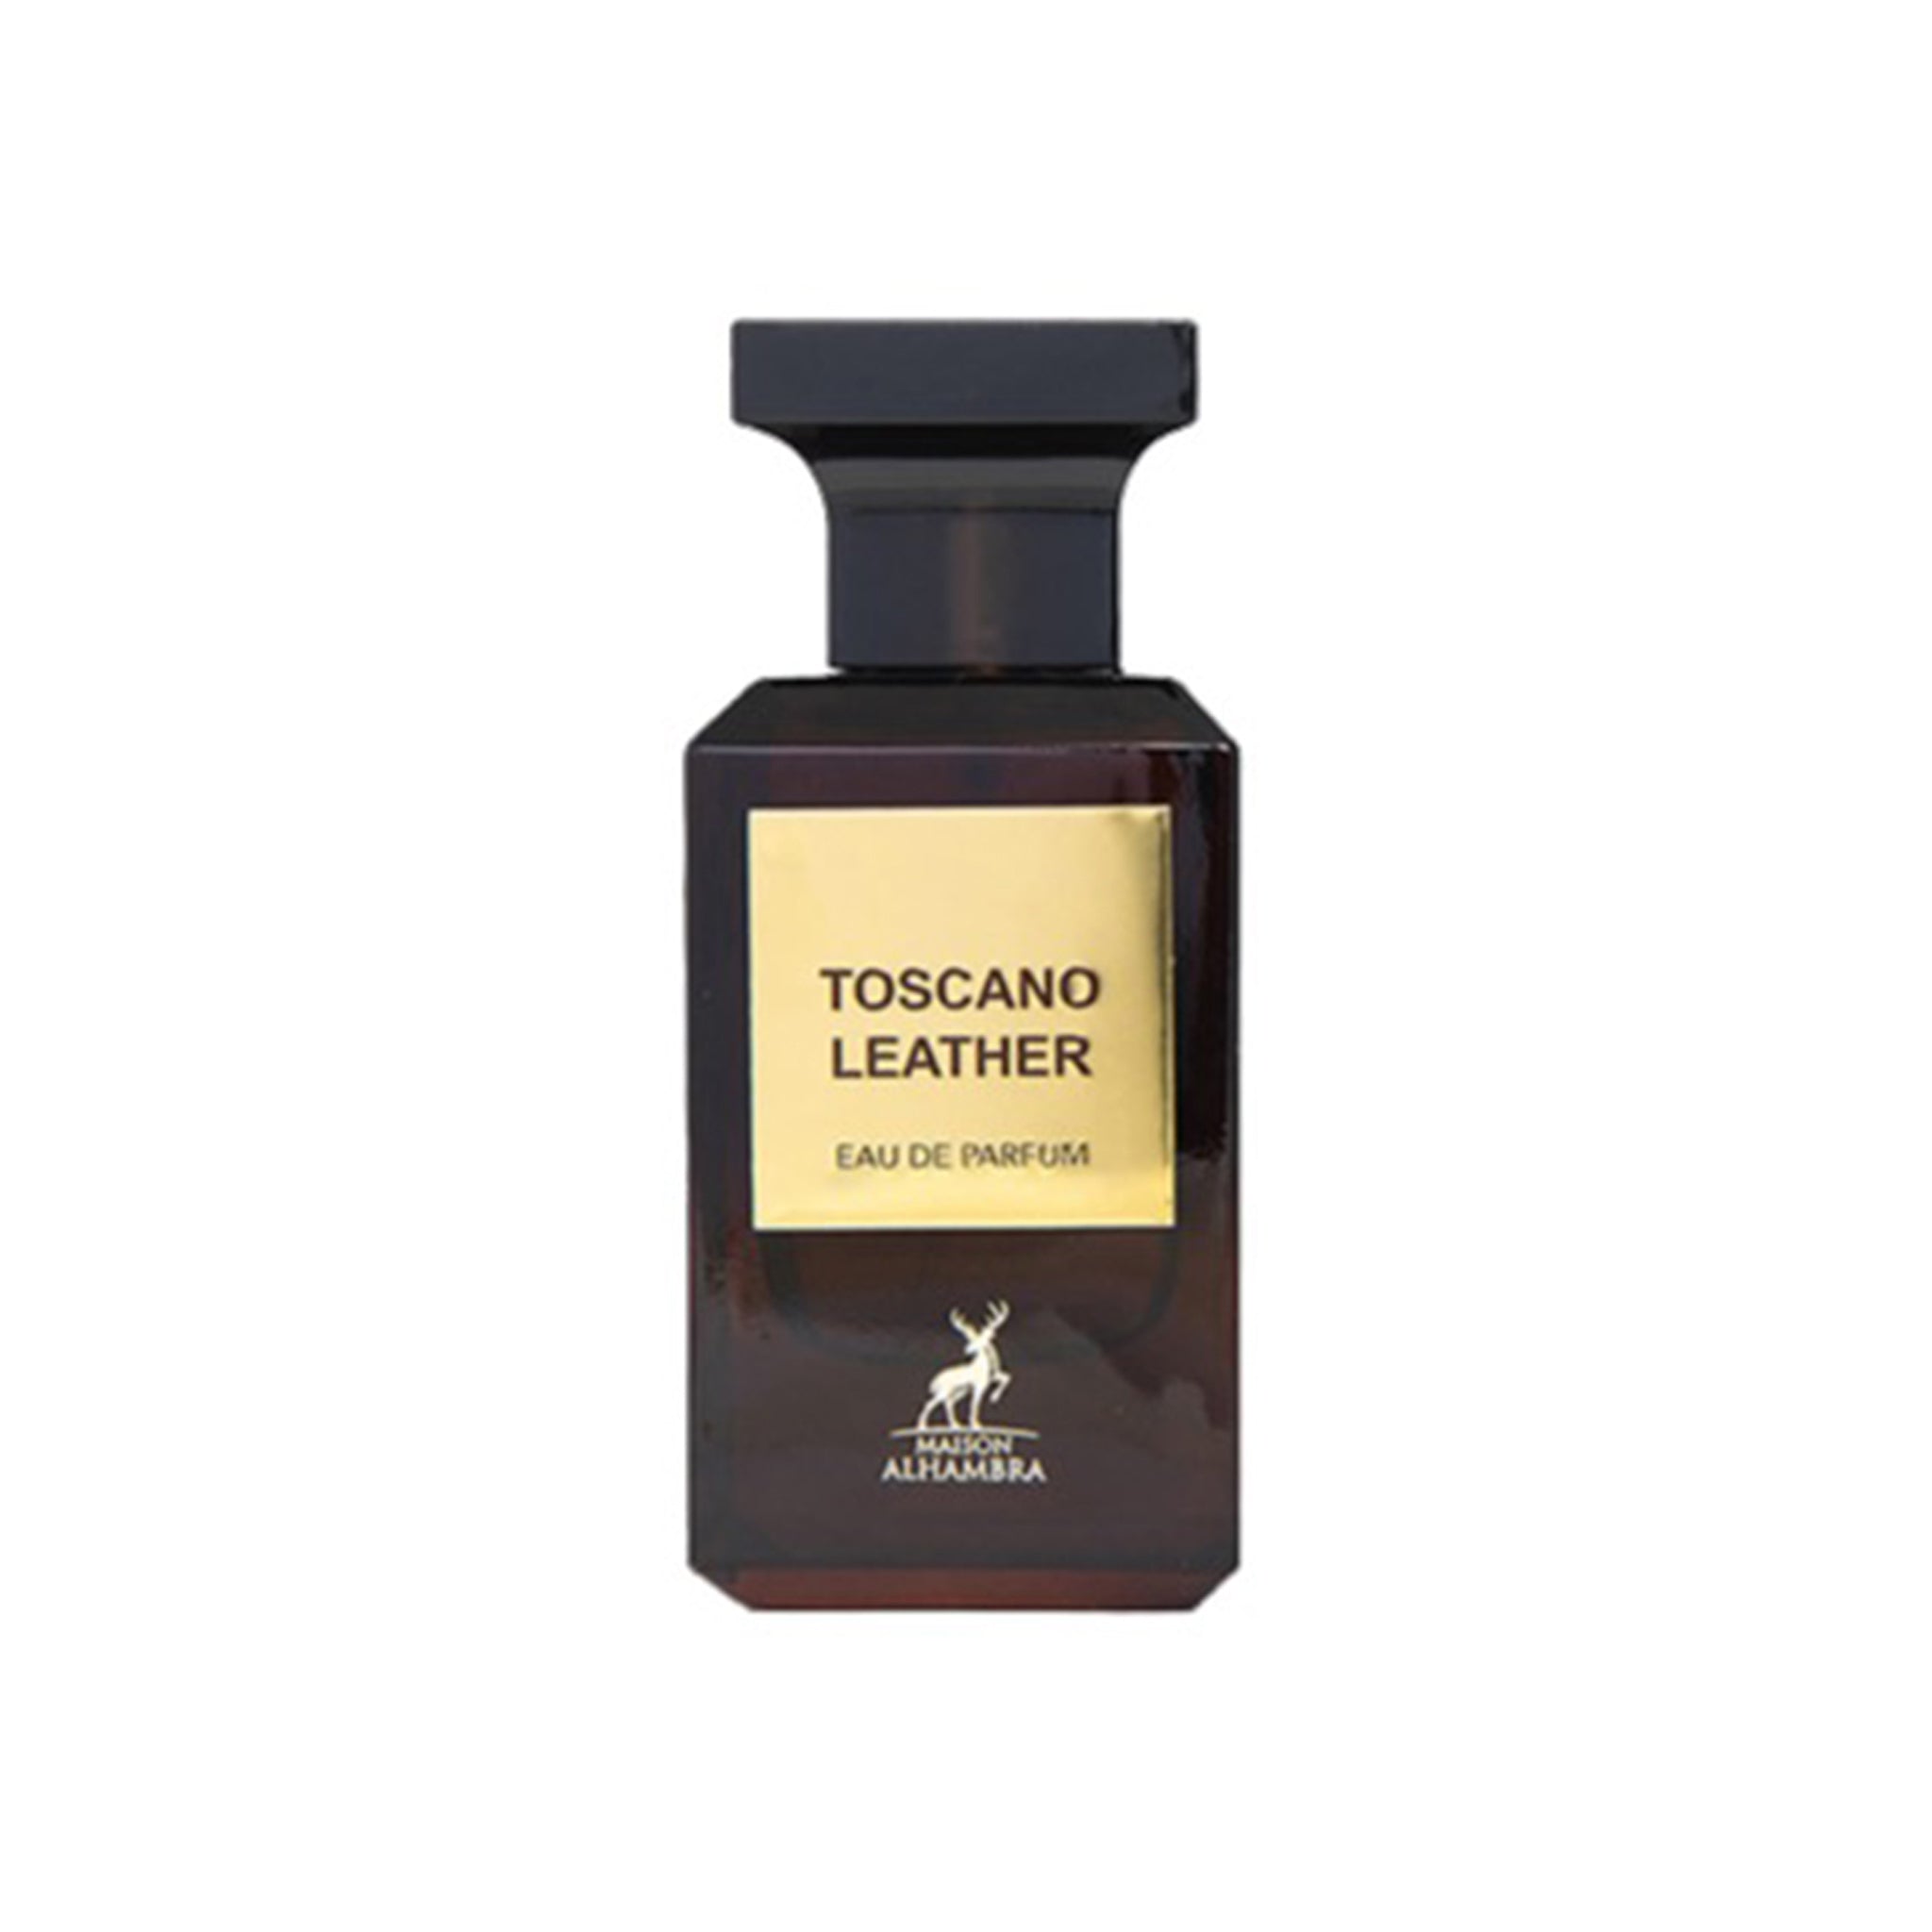 Toscano Leather (Eau De Parfum 80ml) by Maison Alhambra